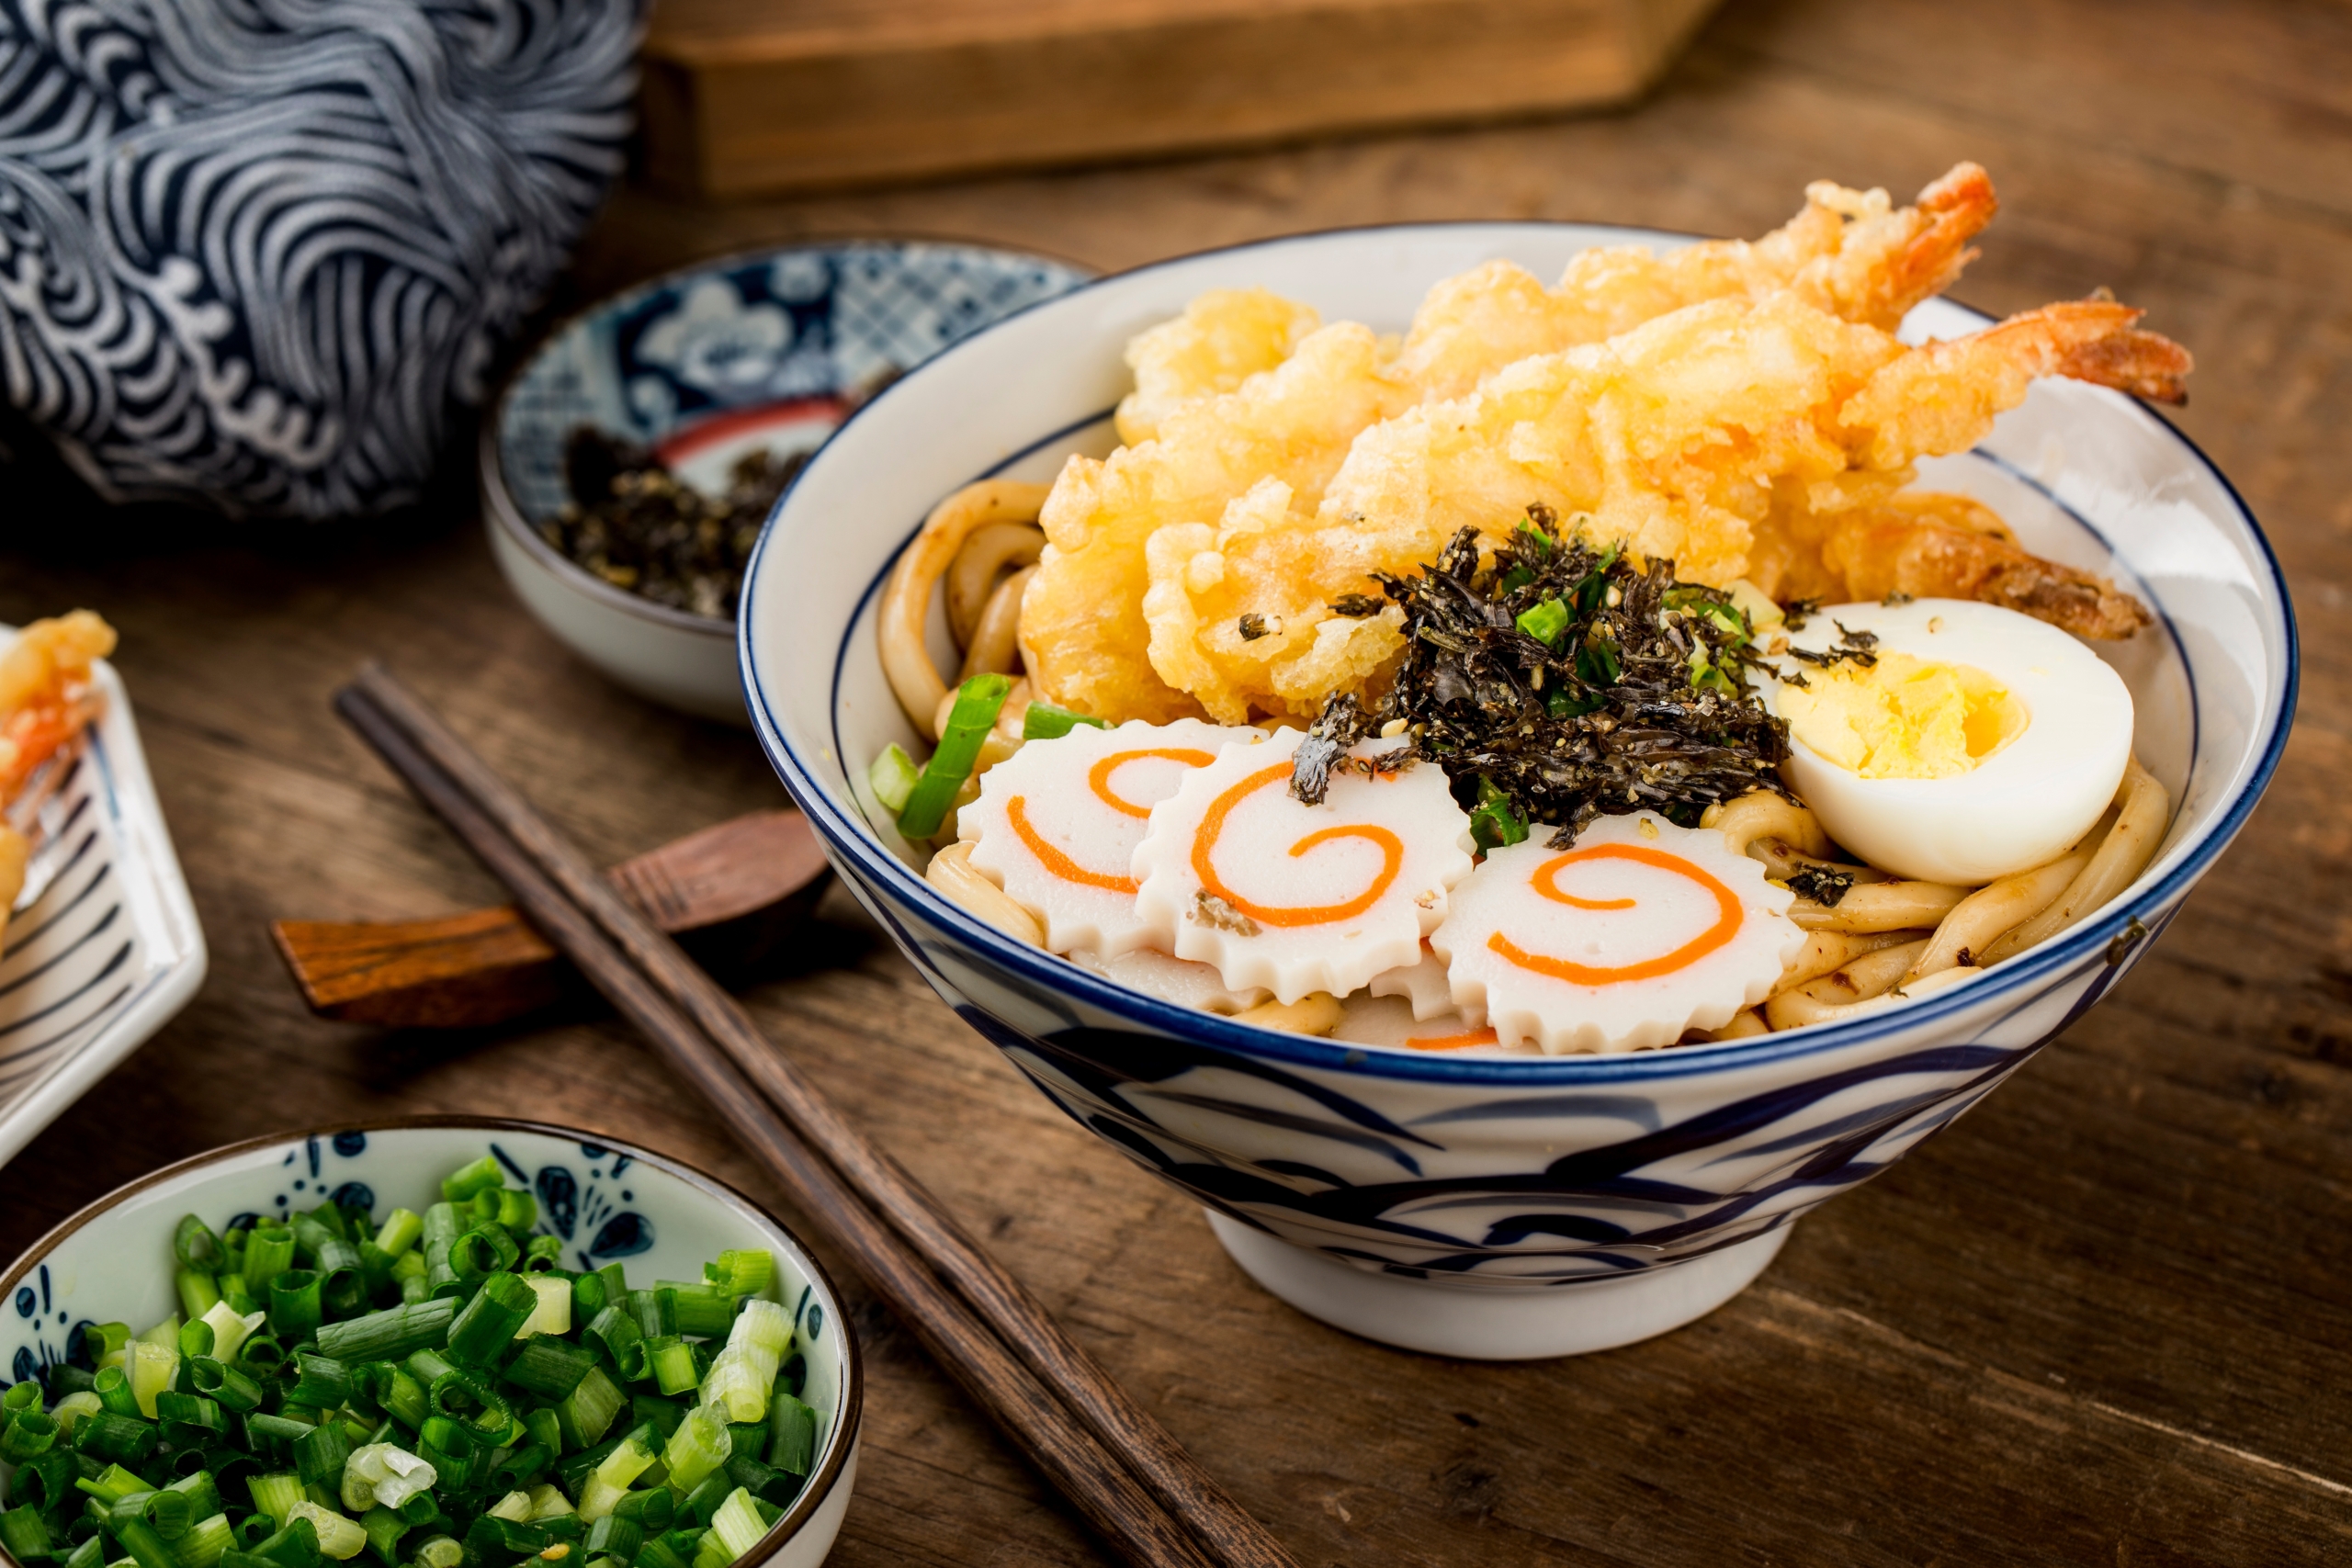 Nguyên liệu của các món mì kiểu Nhật được chuẩn bị kỹ lưỡng, trình bày tinh tế nên khá hấp dẫn đối với thực khách. (Ảnh: Shutterstock)